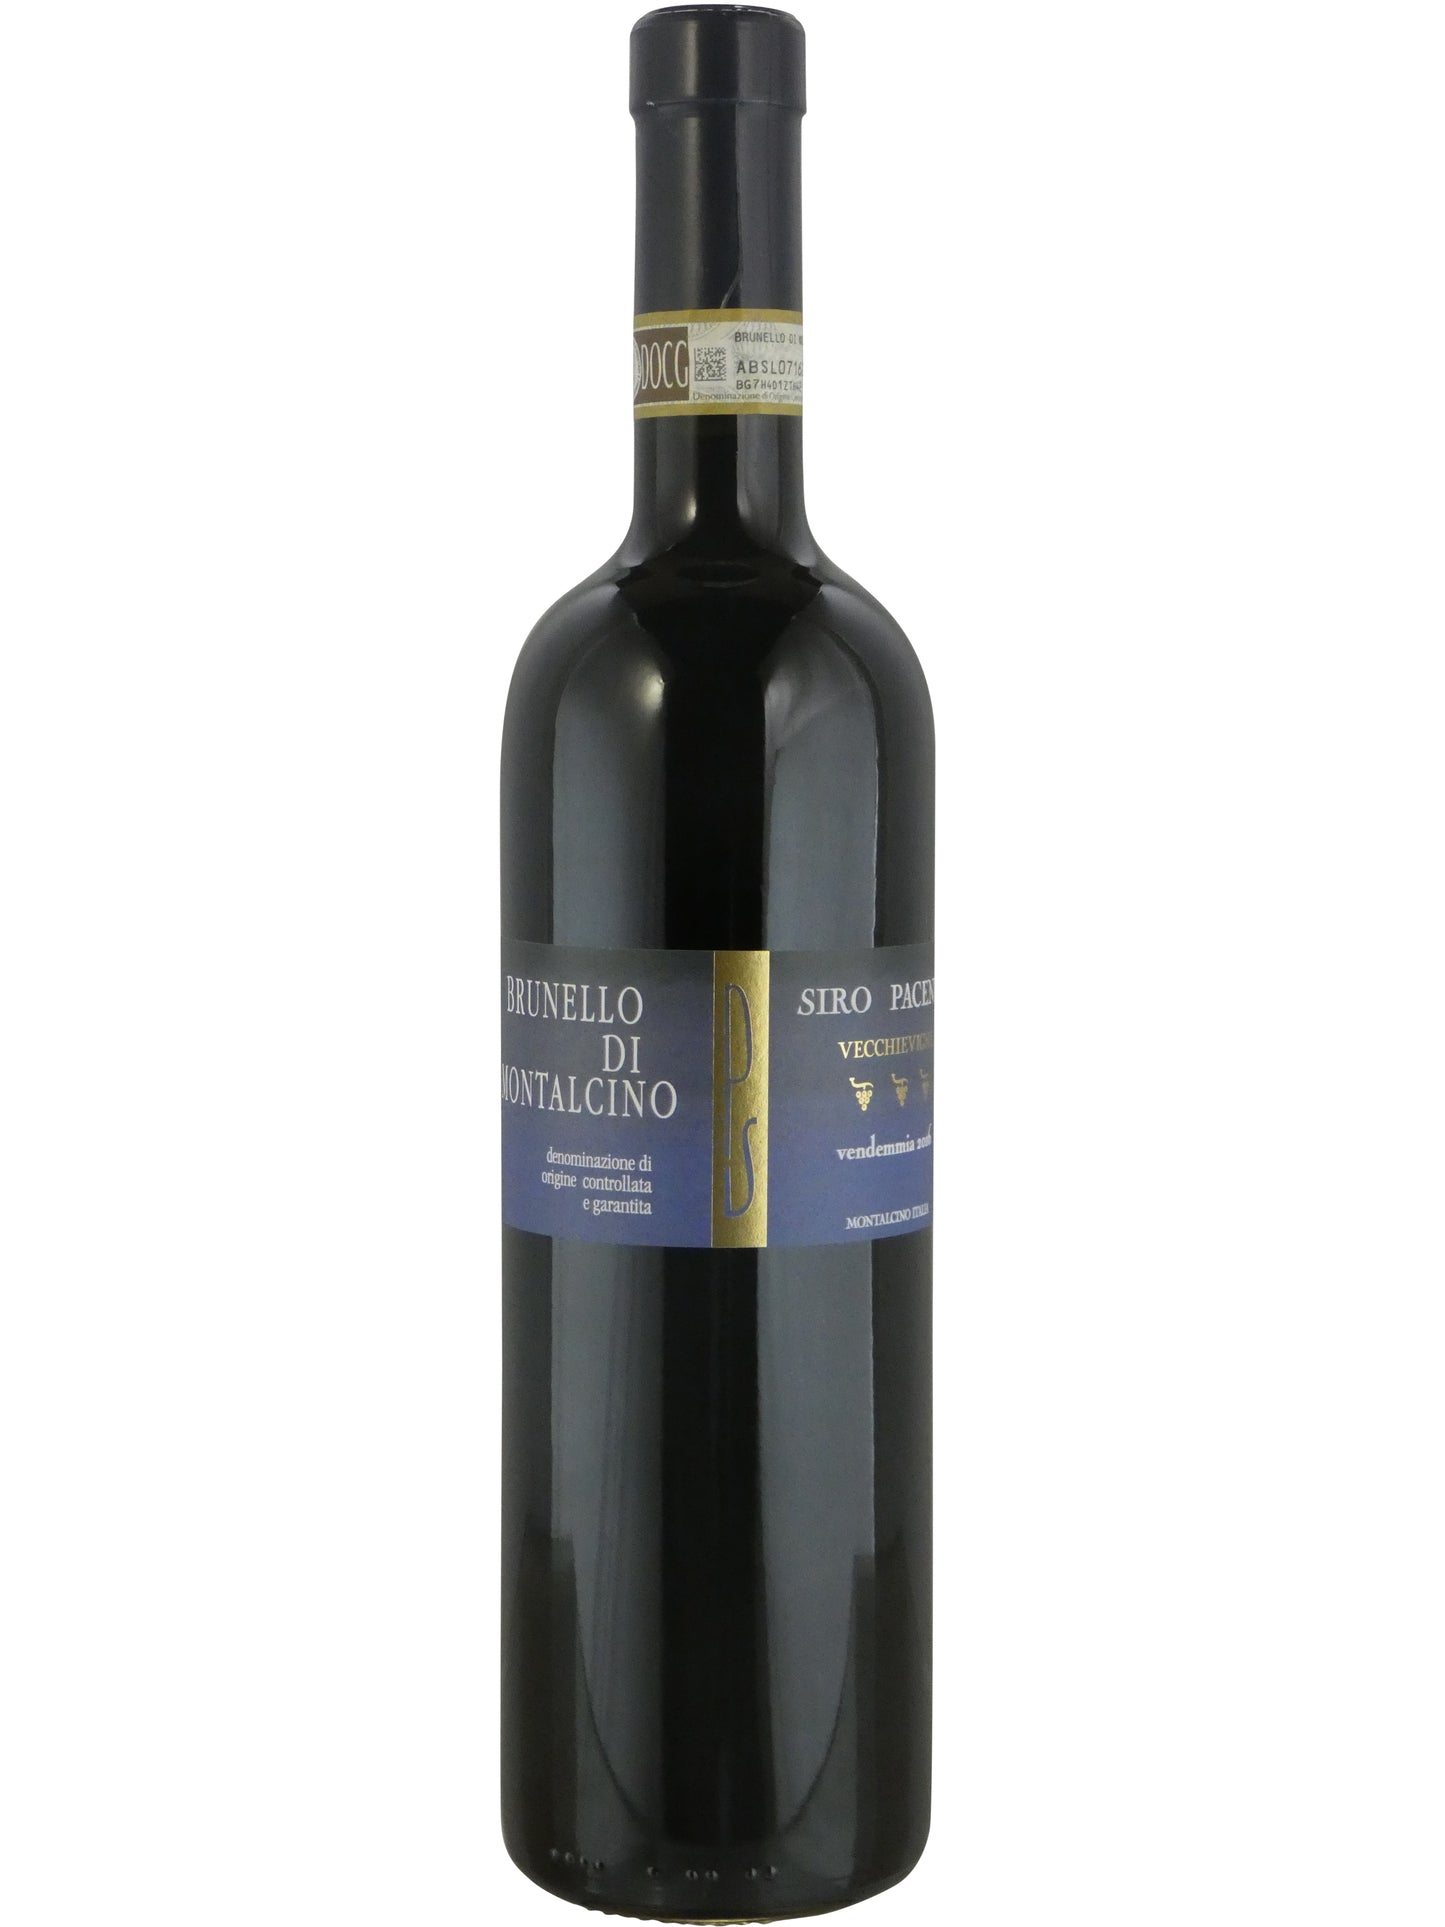 Siro Pacenti Vecchie Vigne Brunello di Montalcino - 2016 (750ml)